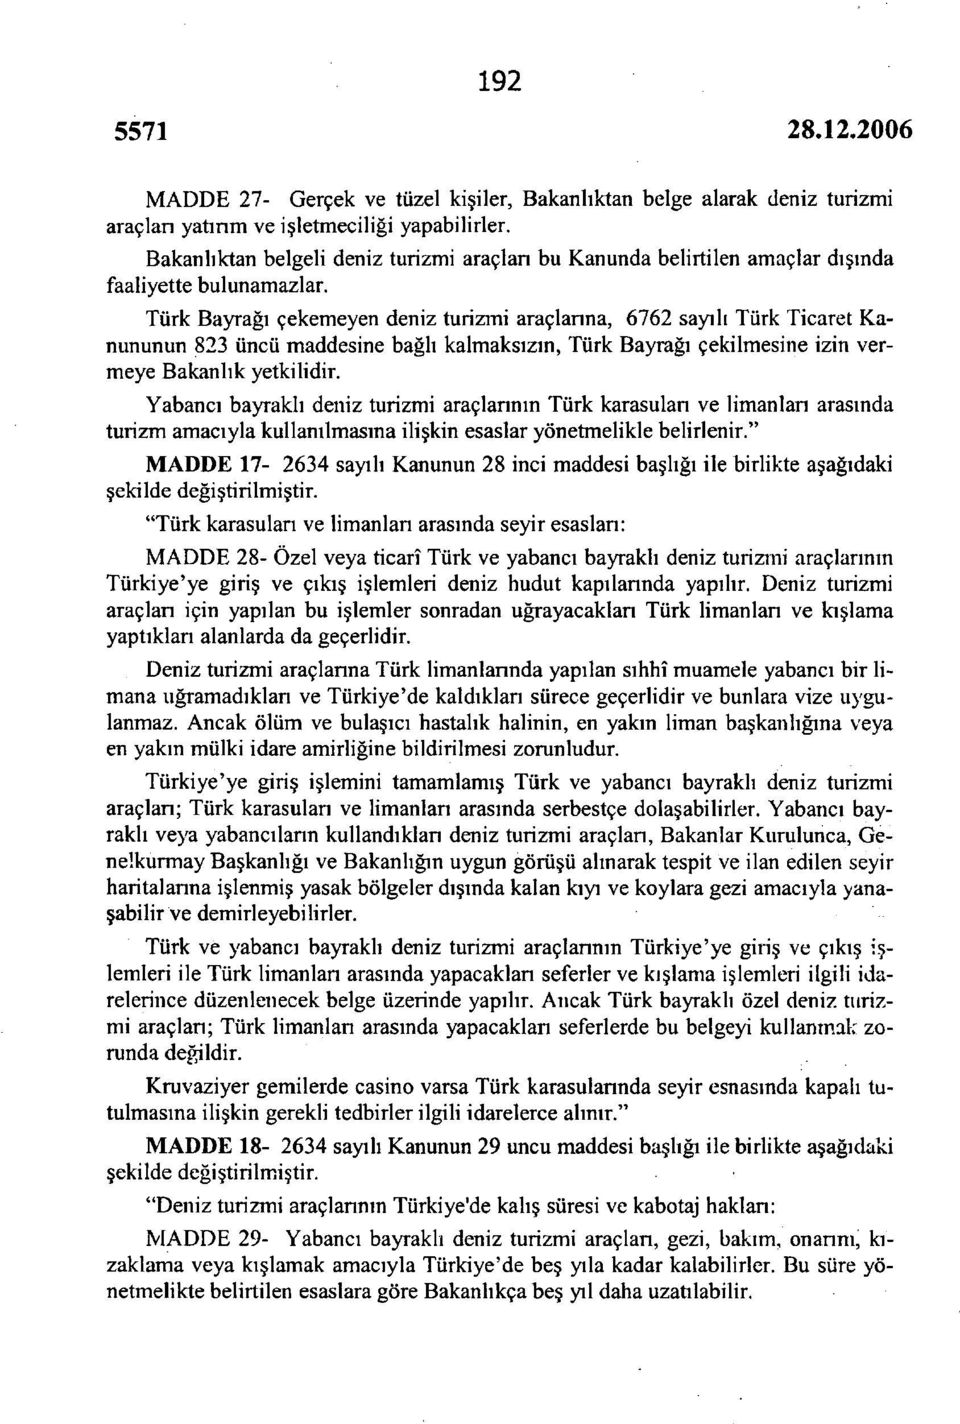 Türk Bayrağı çekemeyen deniz turizmi araçlanna, 6762 sayılı Türk Ticaret Kanununun 823 üncü maddesine bağlı kalmaksızın, Türk Bayrağı çekilmesine izin vermeye Bakanlık yetkilidir.